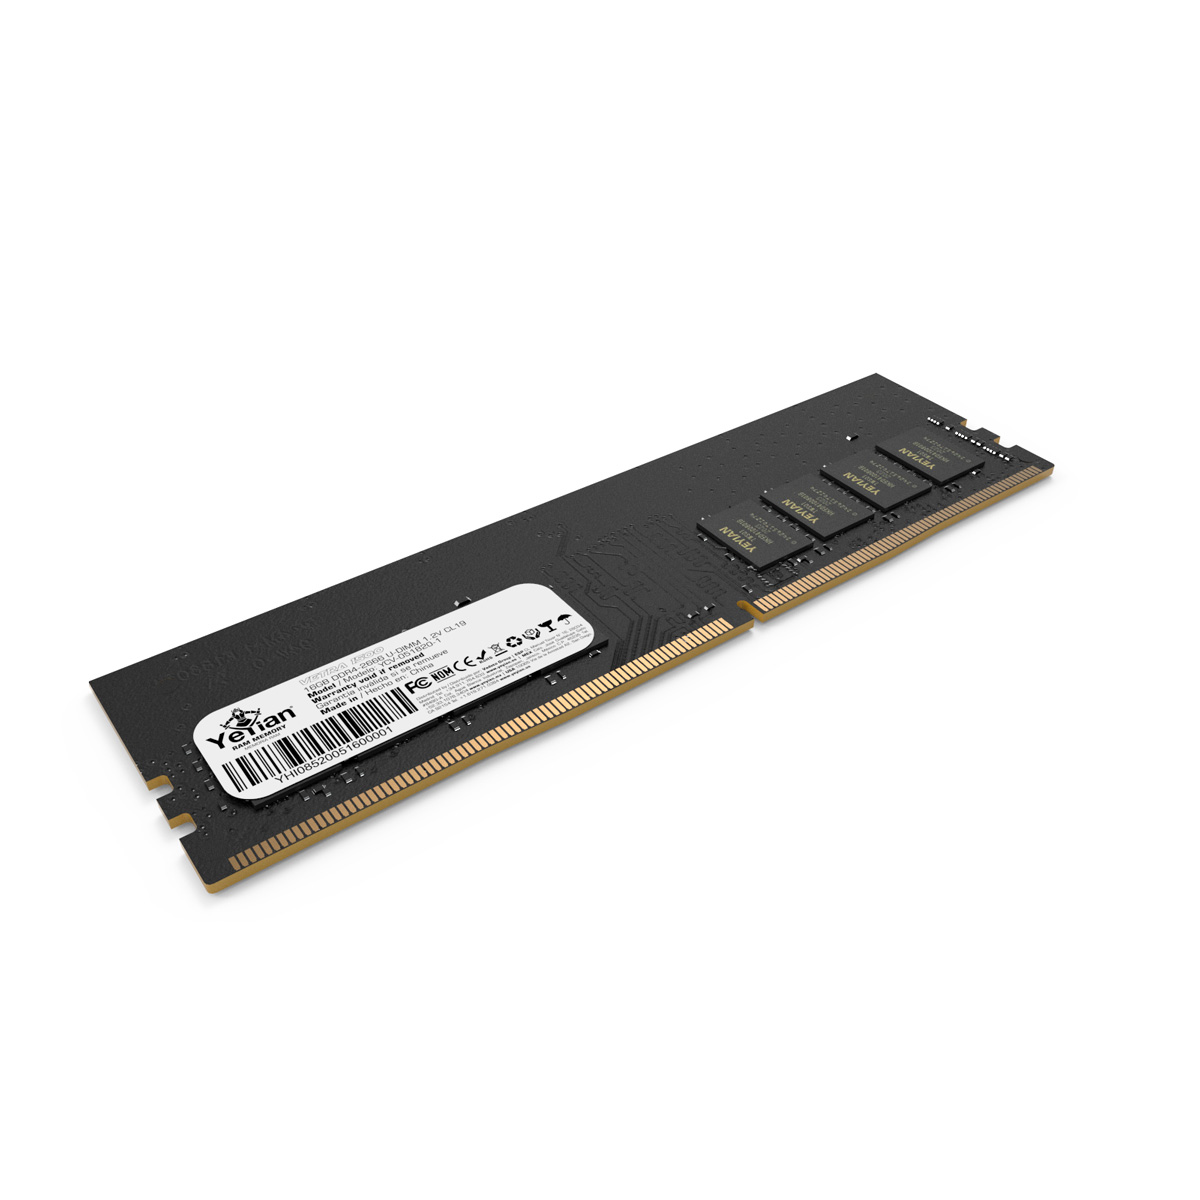 MEMORIA YEYIAN DDR4 GAMING YCV-051820-1 VETRA, 16GB, MHZ 2666